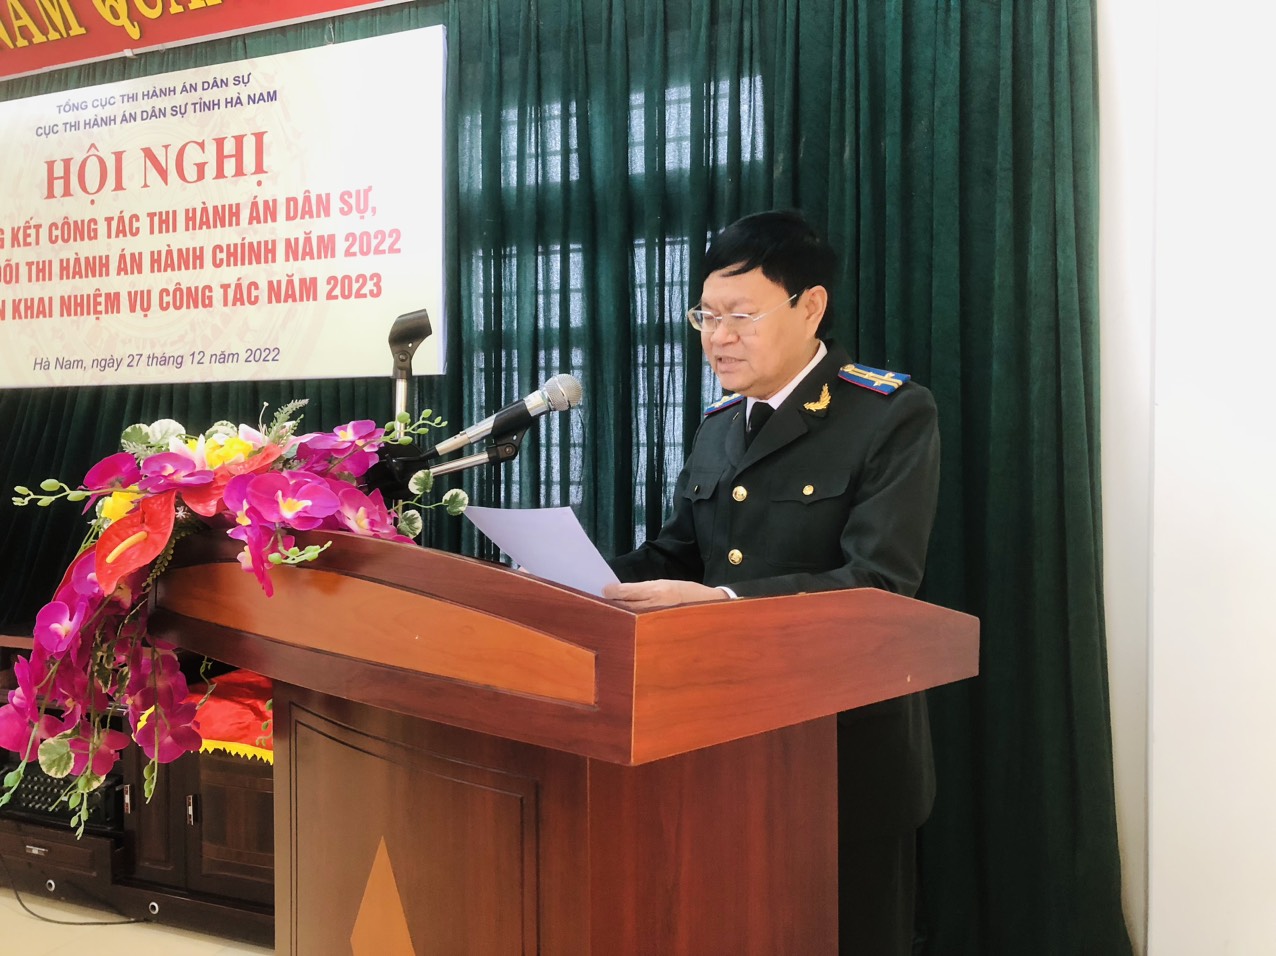 Cục THADS tỉnh Hà Nam tổ chức Hội nghị triển khai công tác THADS, theo dõi THAHC năm 2023.